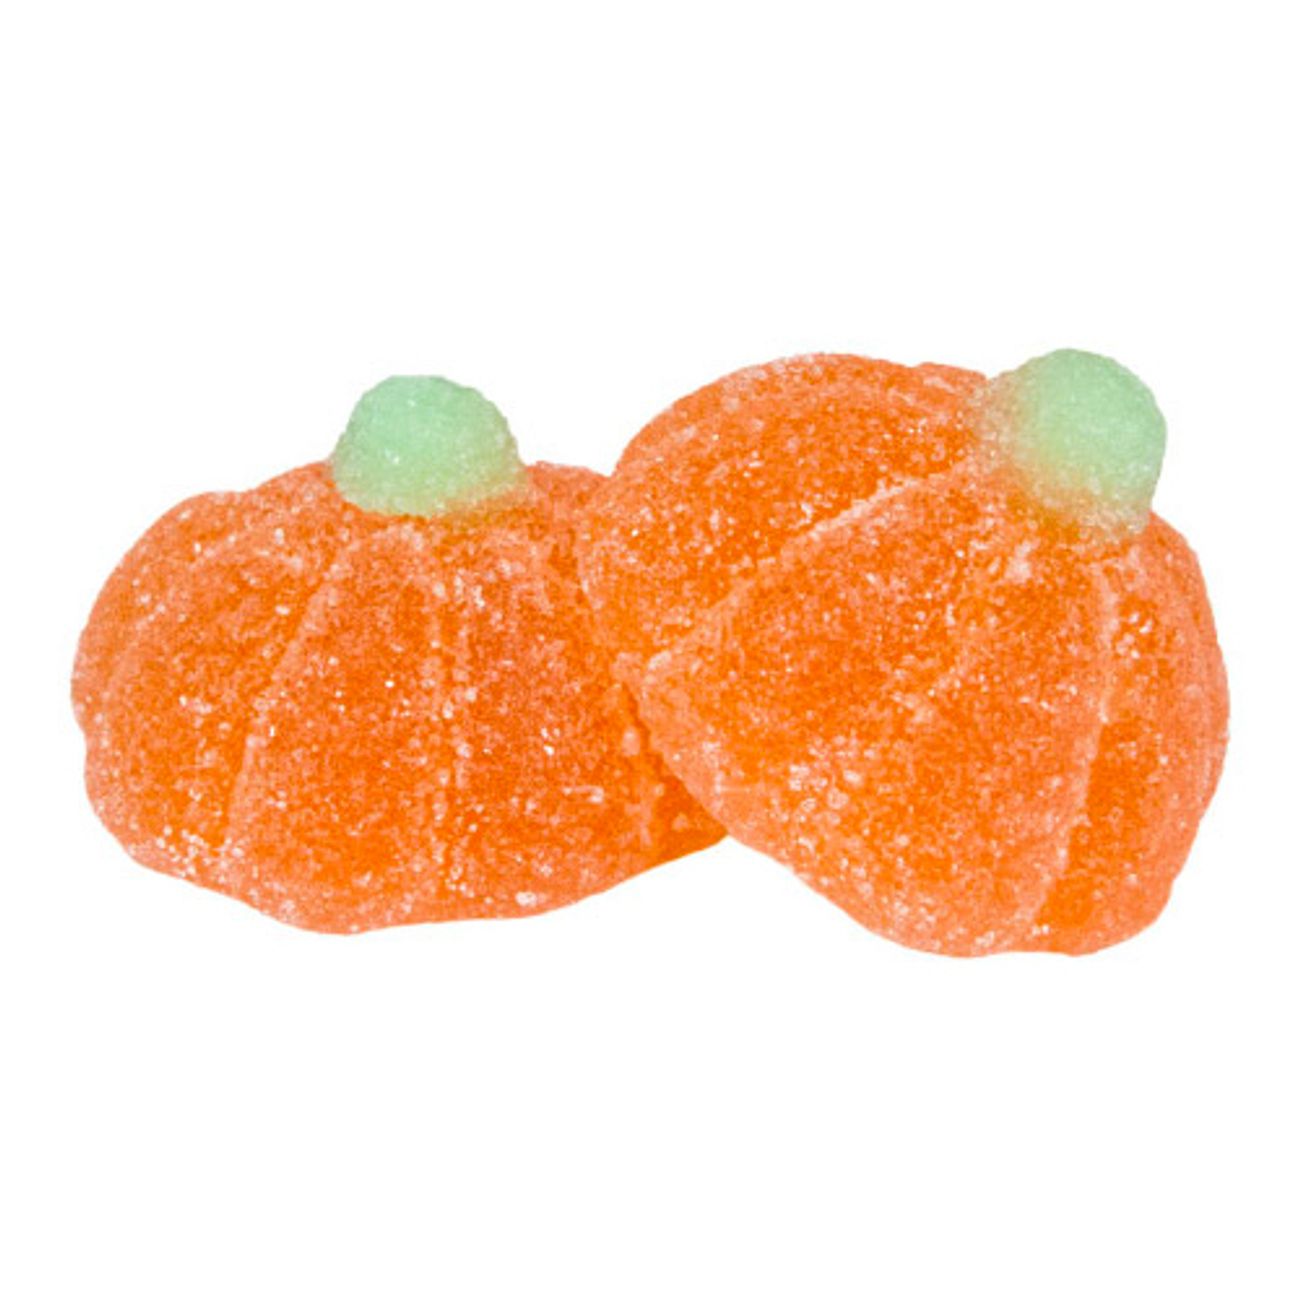 sockrade-mandariner-storpack-79326-1